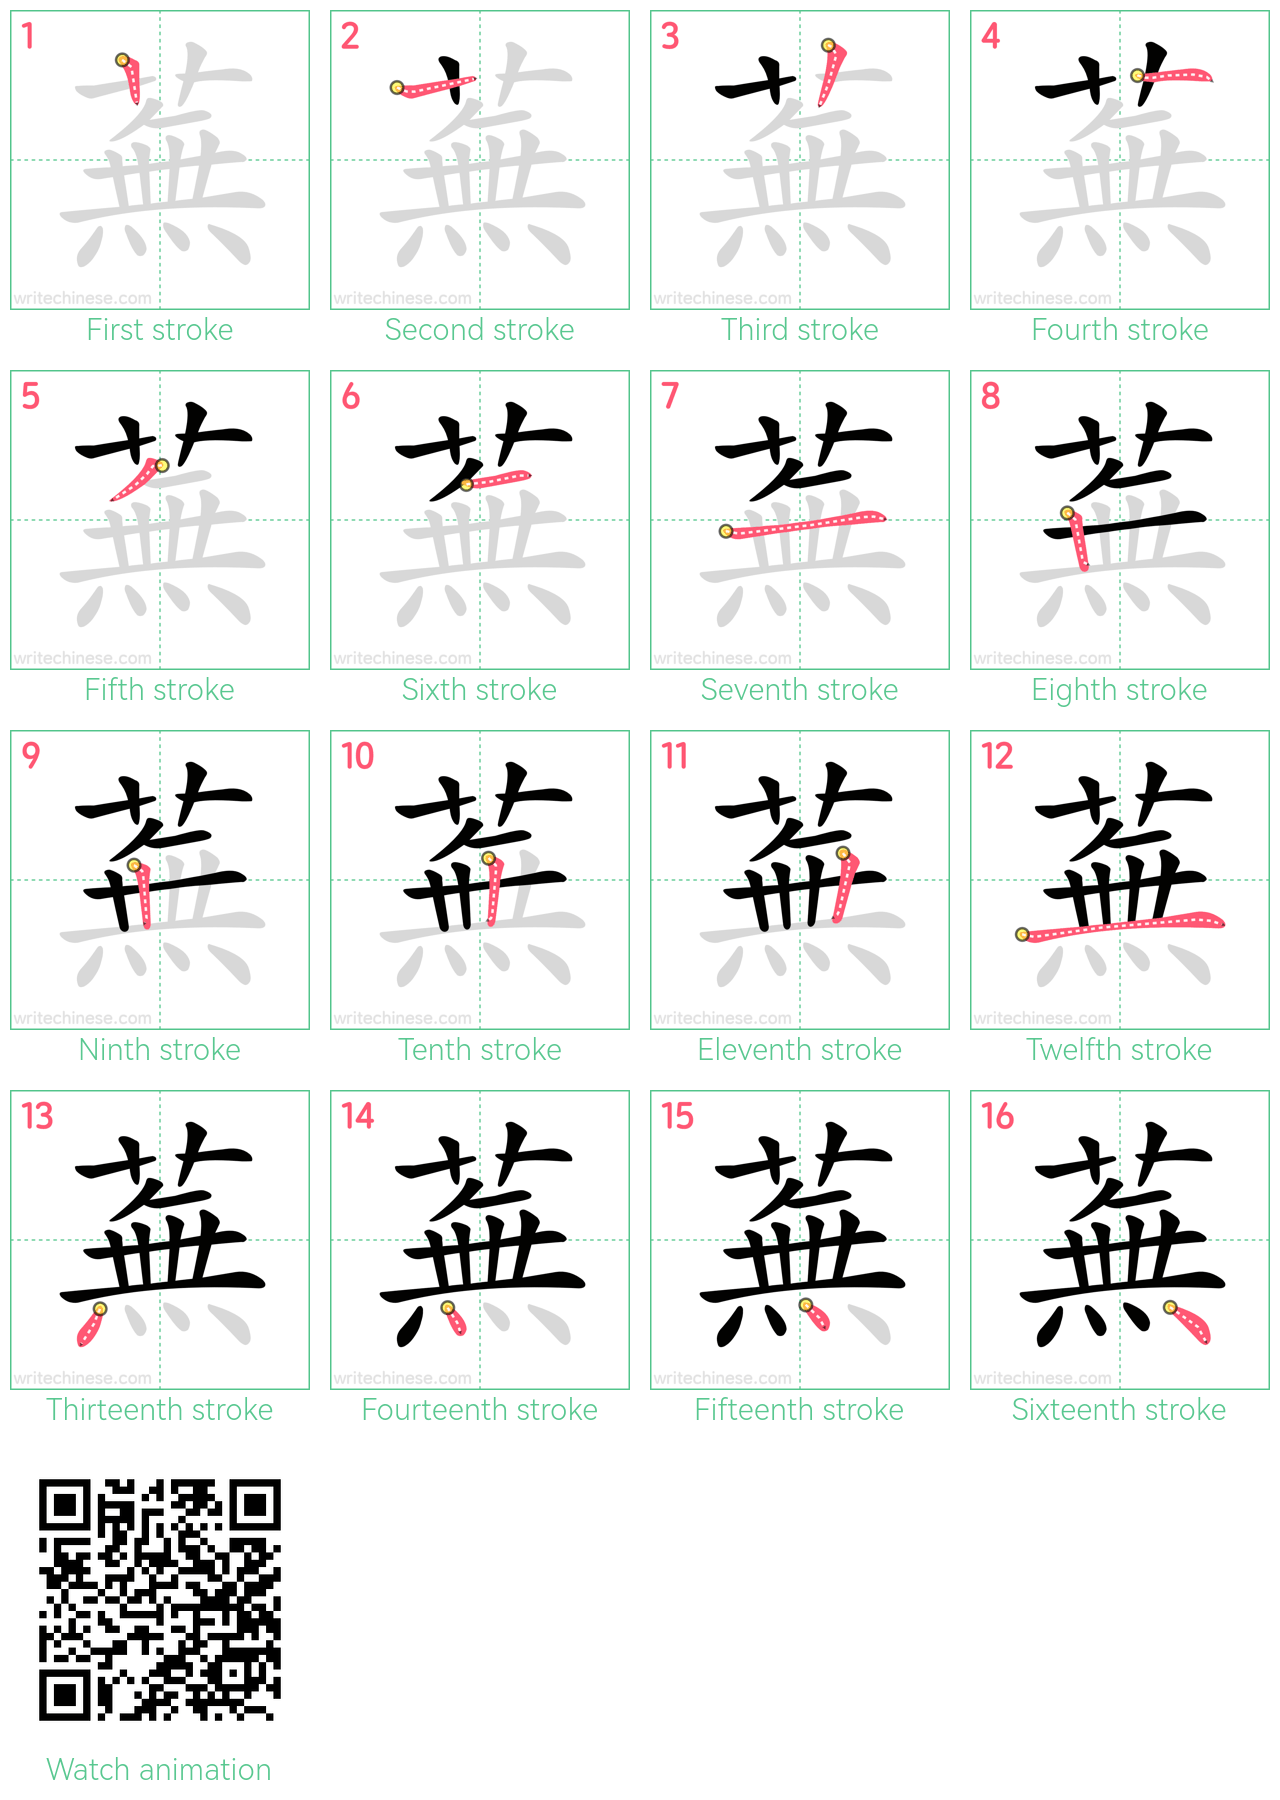 蕪 step-by-step stroke order diagrams